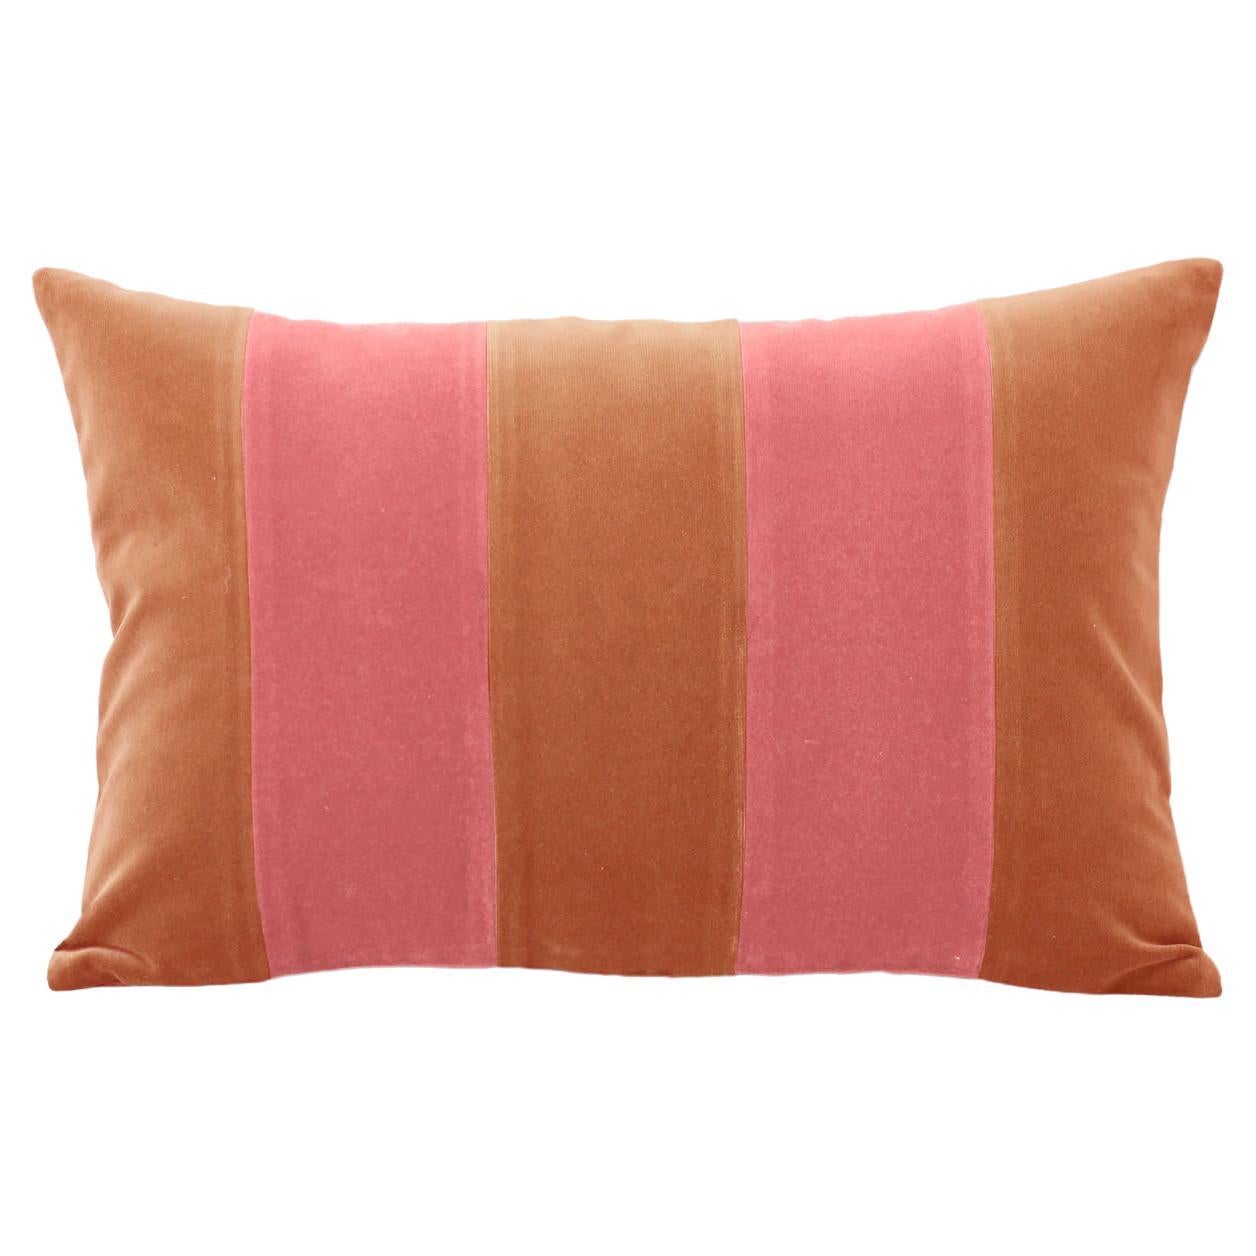 GEMMA II Camel & Rose Velvet Deluxe Handmade Decorative Pillow For Sale